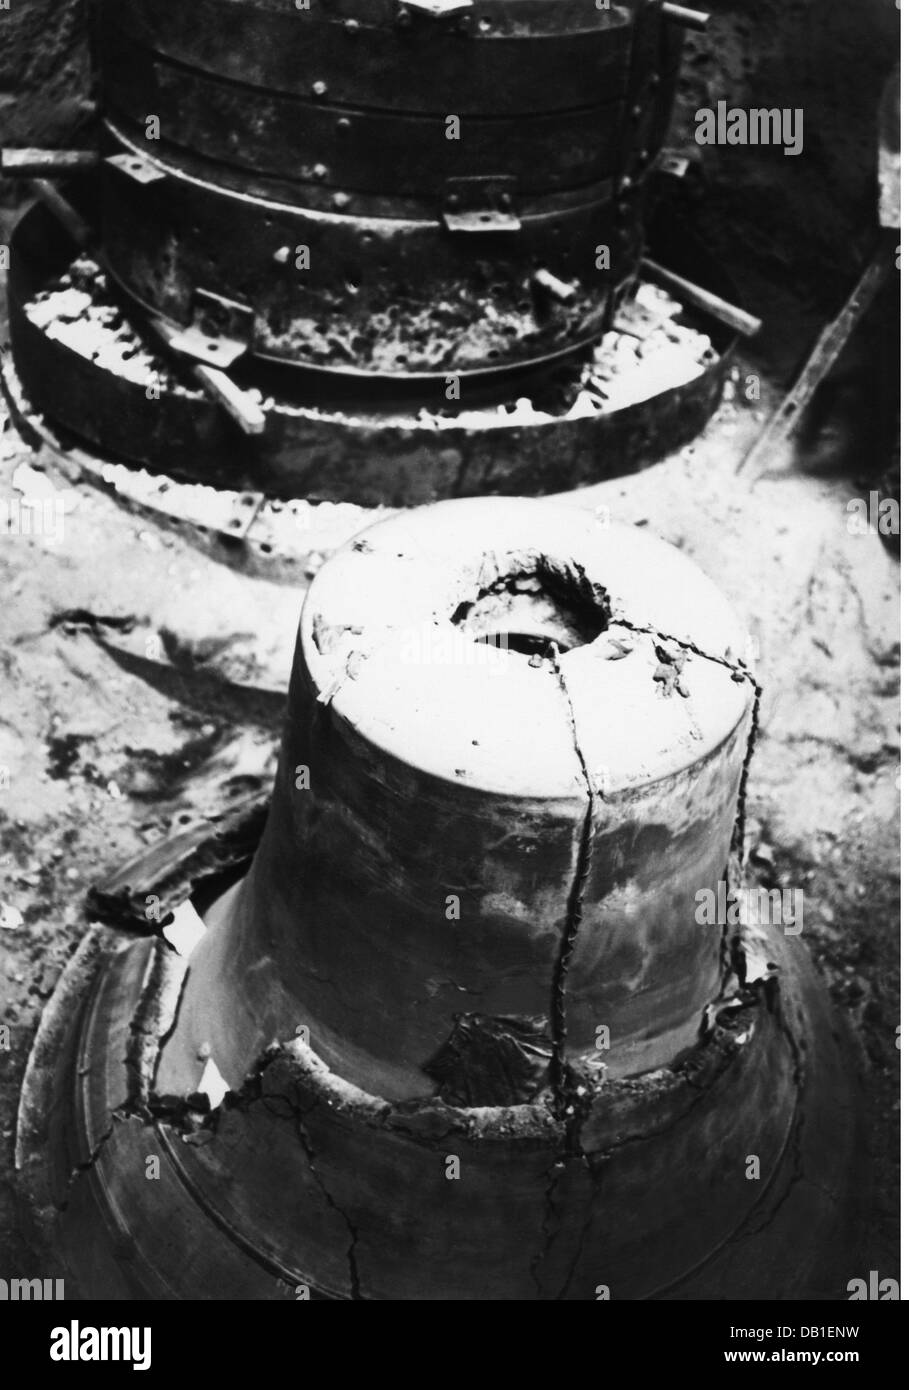 Artisanat, fondateur de cloche, la gaine battue, fonderie de cloche Joseph Pfundner, Vienne, années 1930, droits additionnels-Clearences-non disponible Banque D'Images